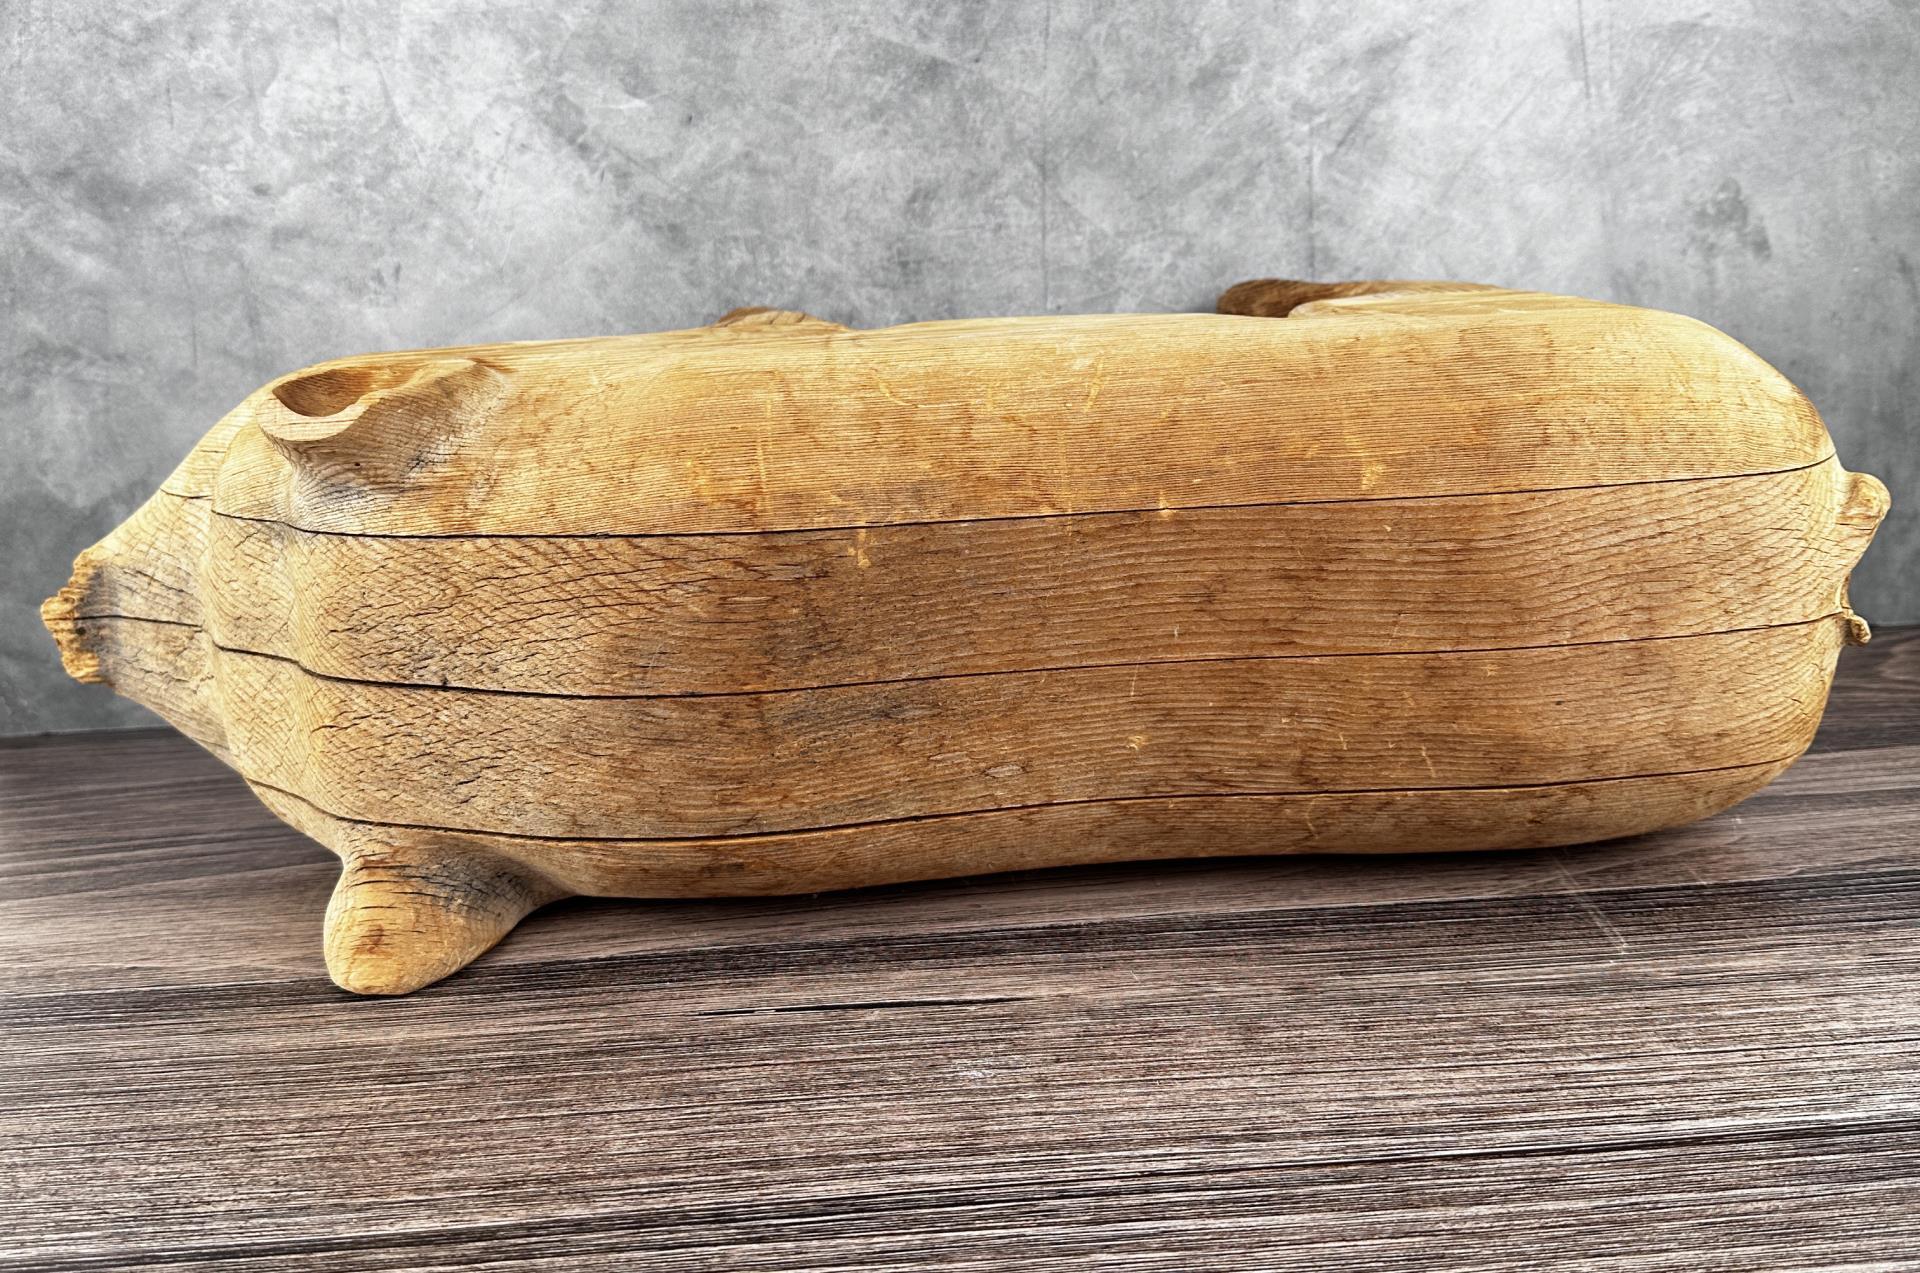 Folk Art Carved Wood Javelina Pig